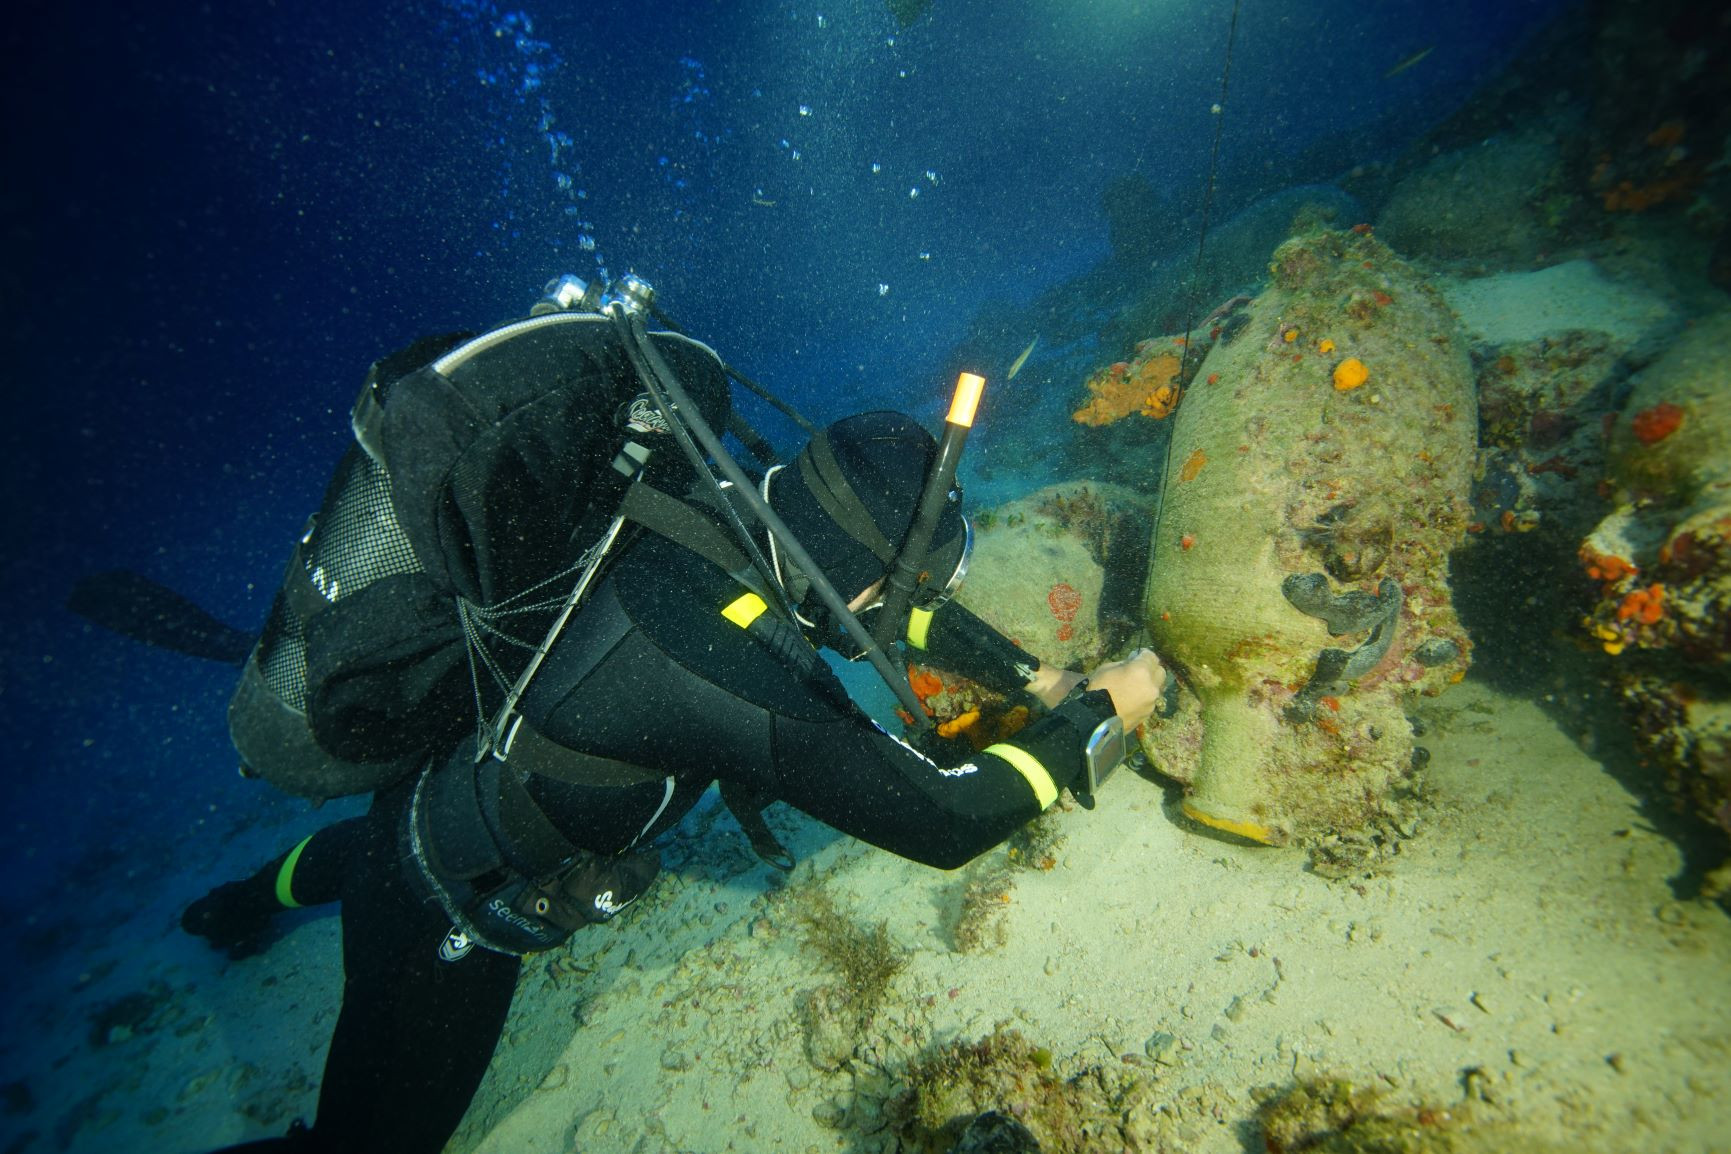 Άθικτο αρχαίο ναυάγιο βρέθηκε στην Κροατία